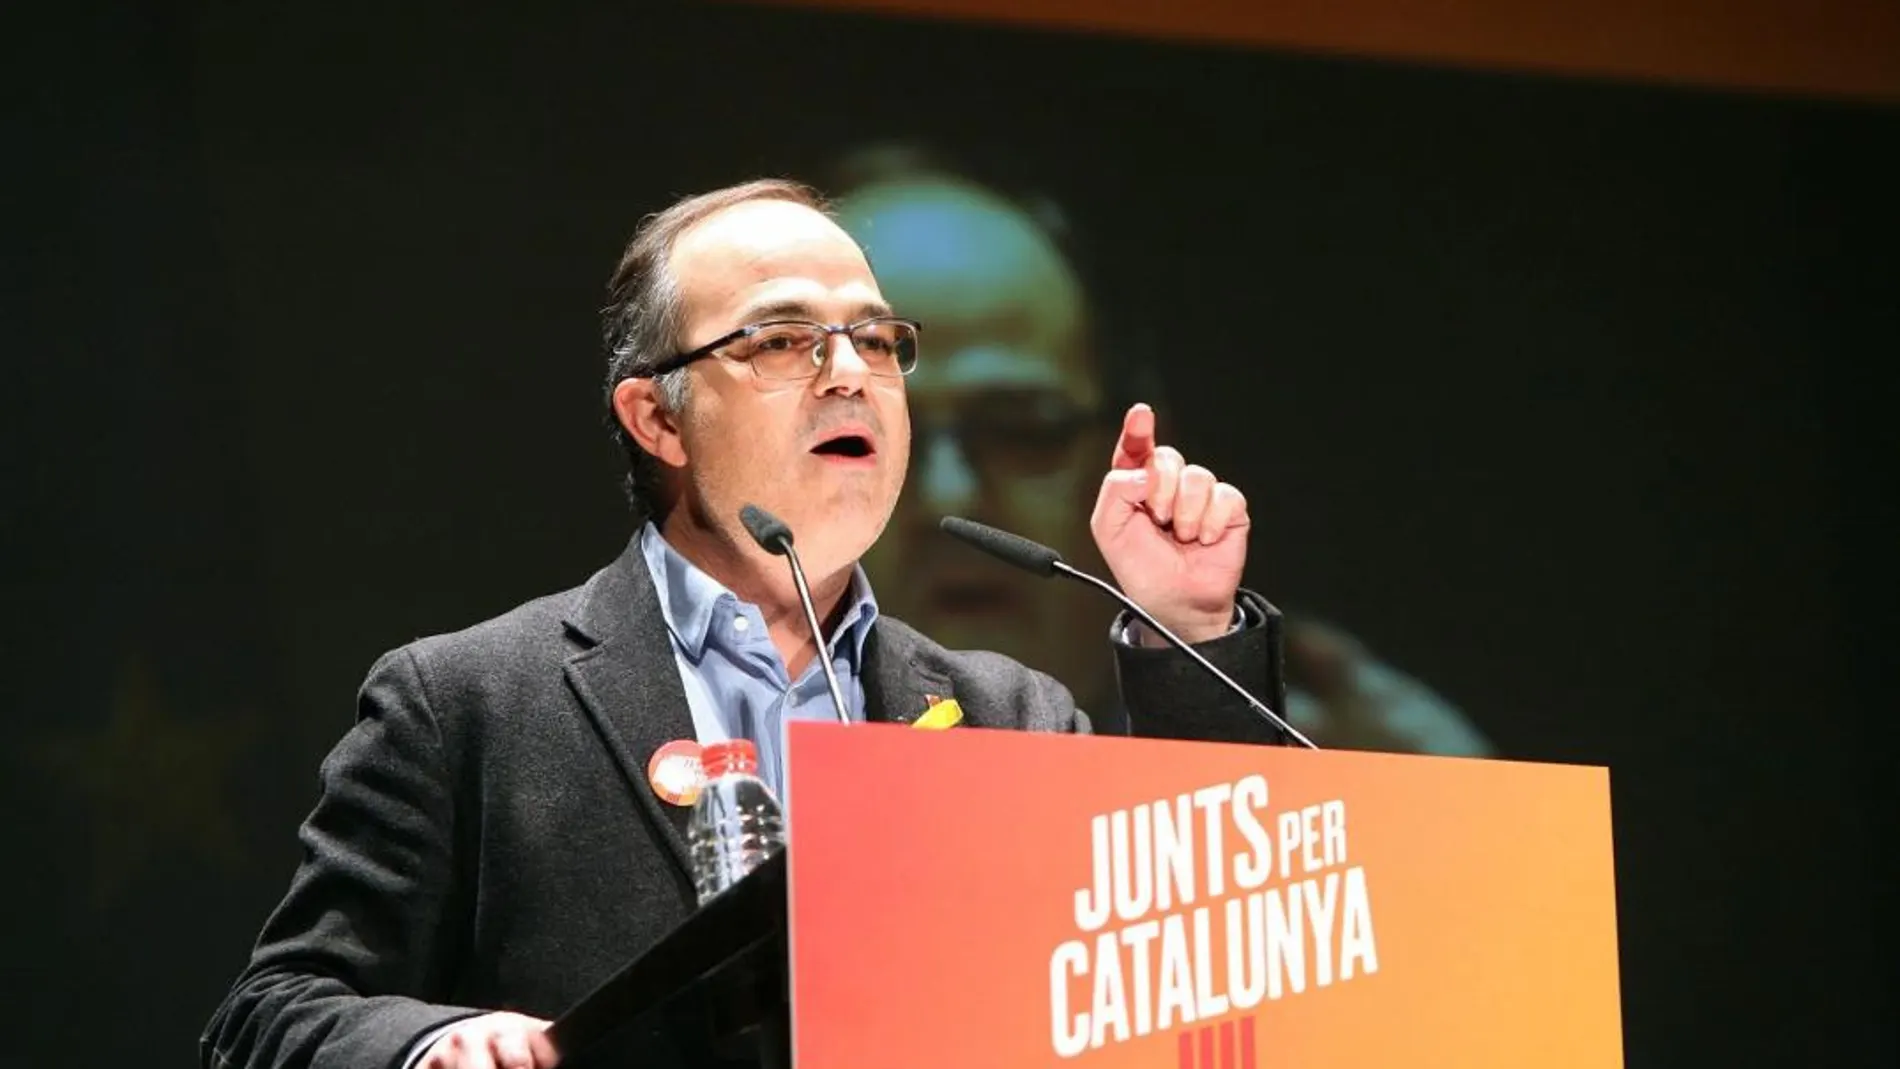 El exconseller y candidato de Junts per Catalunya (JxCat) Jordi Turull durante un mitin esta semana en Reus. EFE/Jaume Sellart